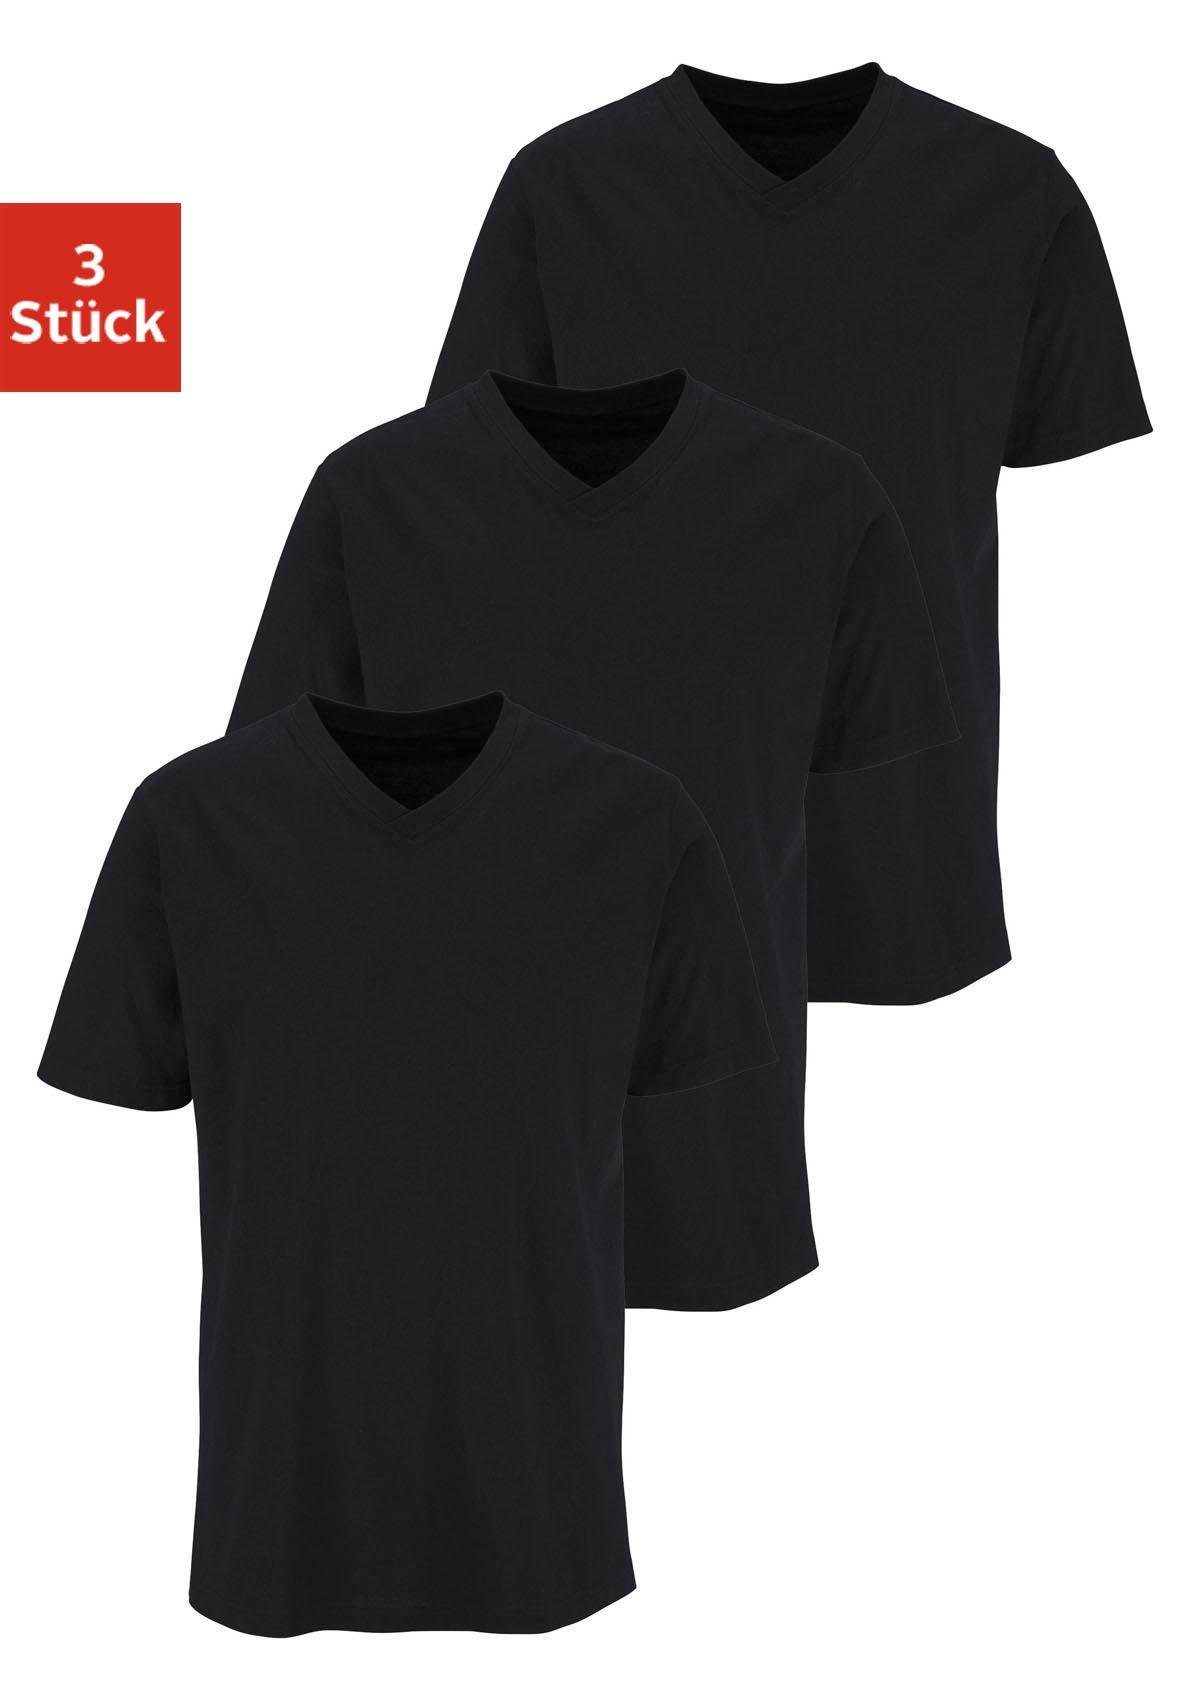 shengli Herren Sommer T-Shirt Shirt Kurzarm Hemd Knopfleiste V-Ausschnitt Tiefem Ausschnitt Slim Fit Kurzarm-Sweatshirt Unterhemd S-5XL